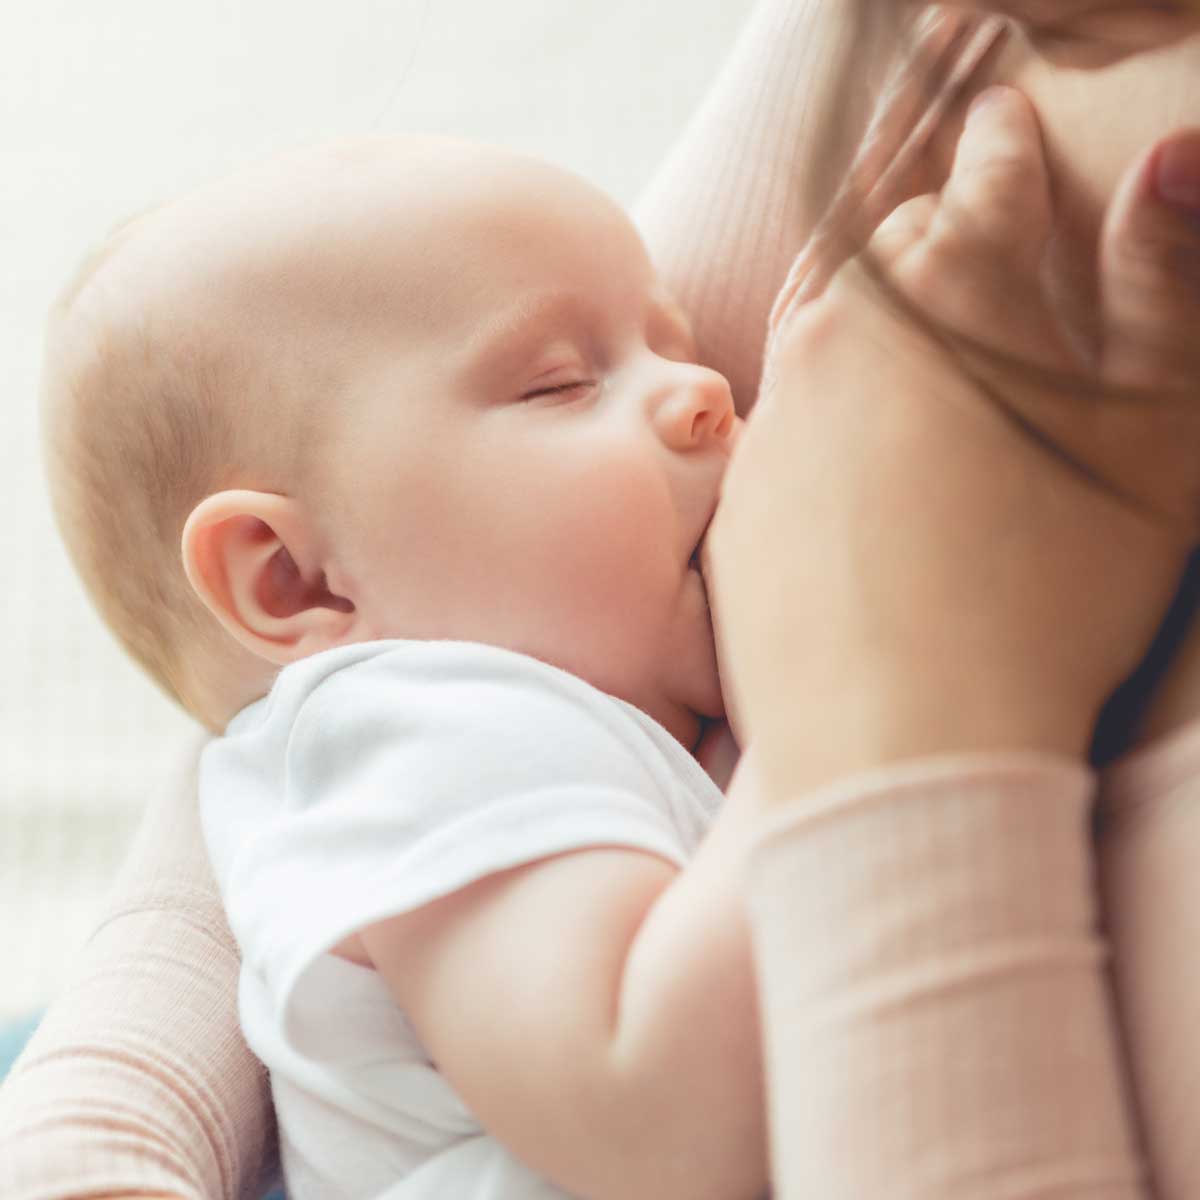 Stillen - Eine tiefe Bindung zwischen Mutter und Kind